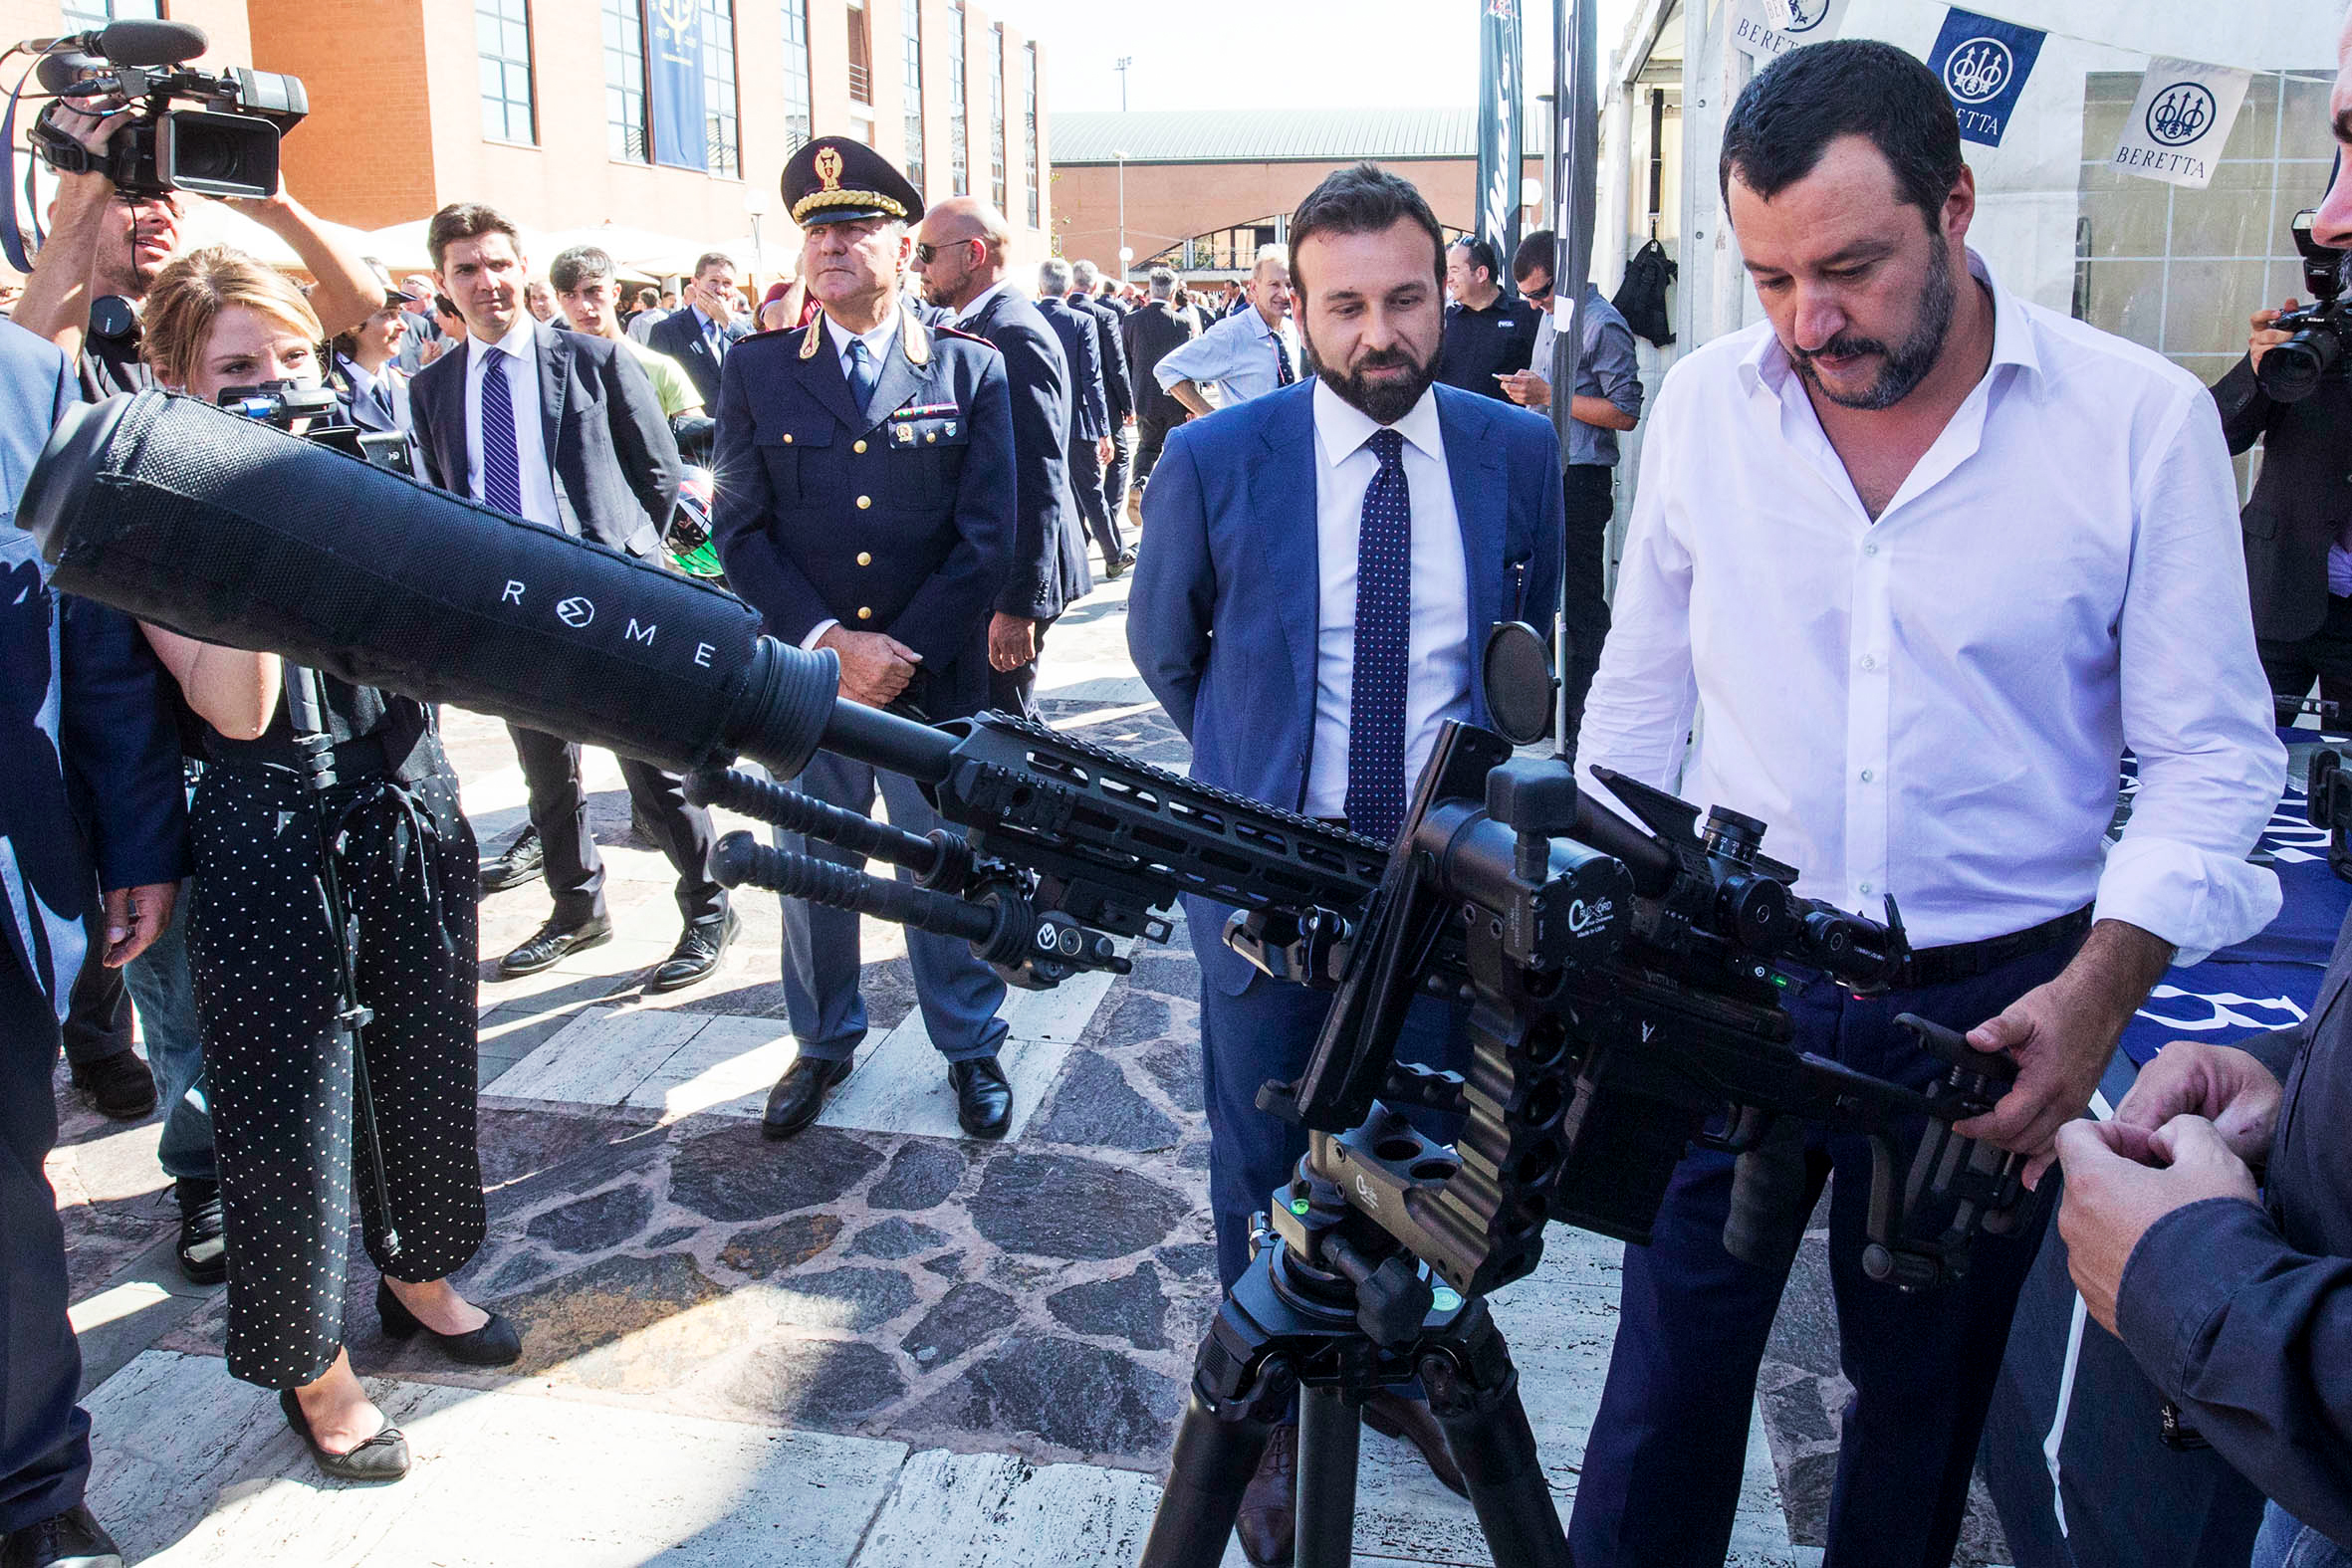 Strage in Texas, Bonelli (Europa verde): "Lega e Fratelli d'Italia vogliono liberalizzare le armi"